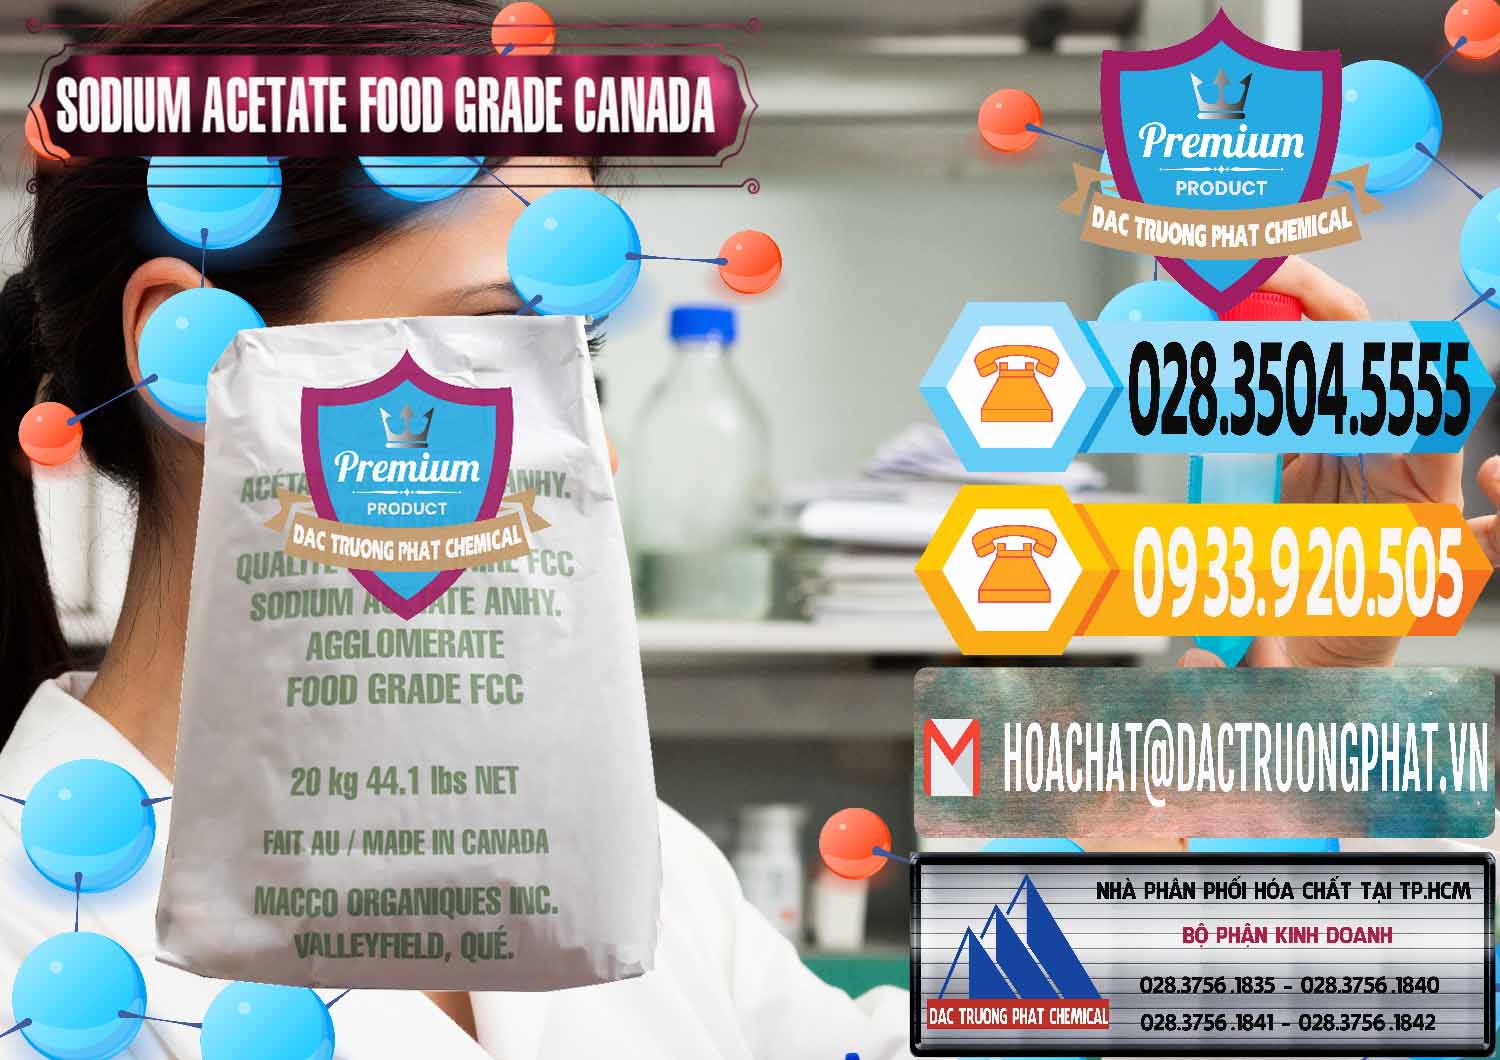 Đơn vị chuyên cung ứng và bán Sodium Acetate - Natri Acetate Food Grade Canada - 0282 - Nhà phân phối và cung cấp hóa chất tại TP.HCM - hoachattayrua.net